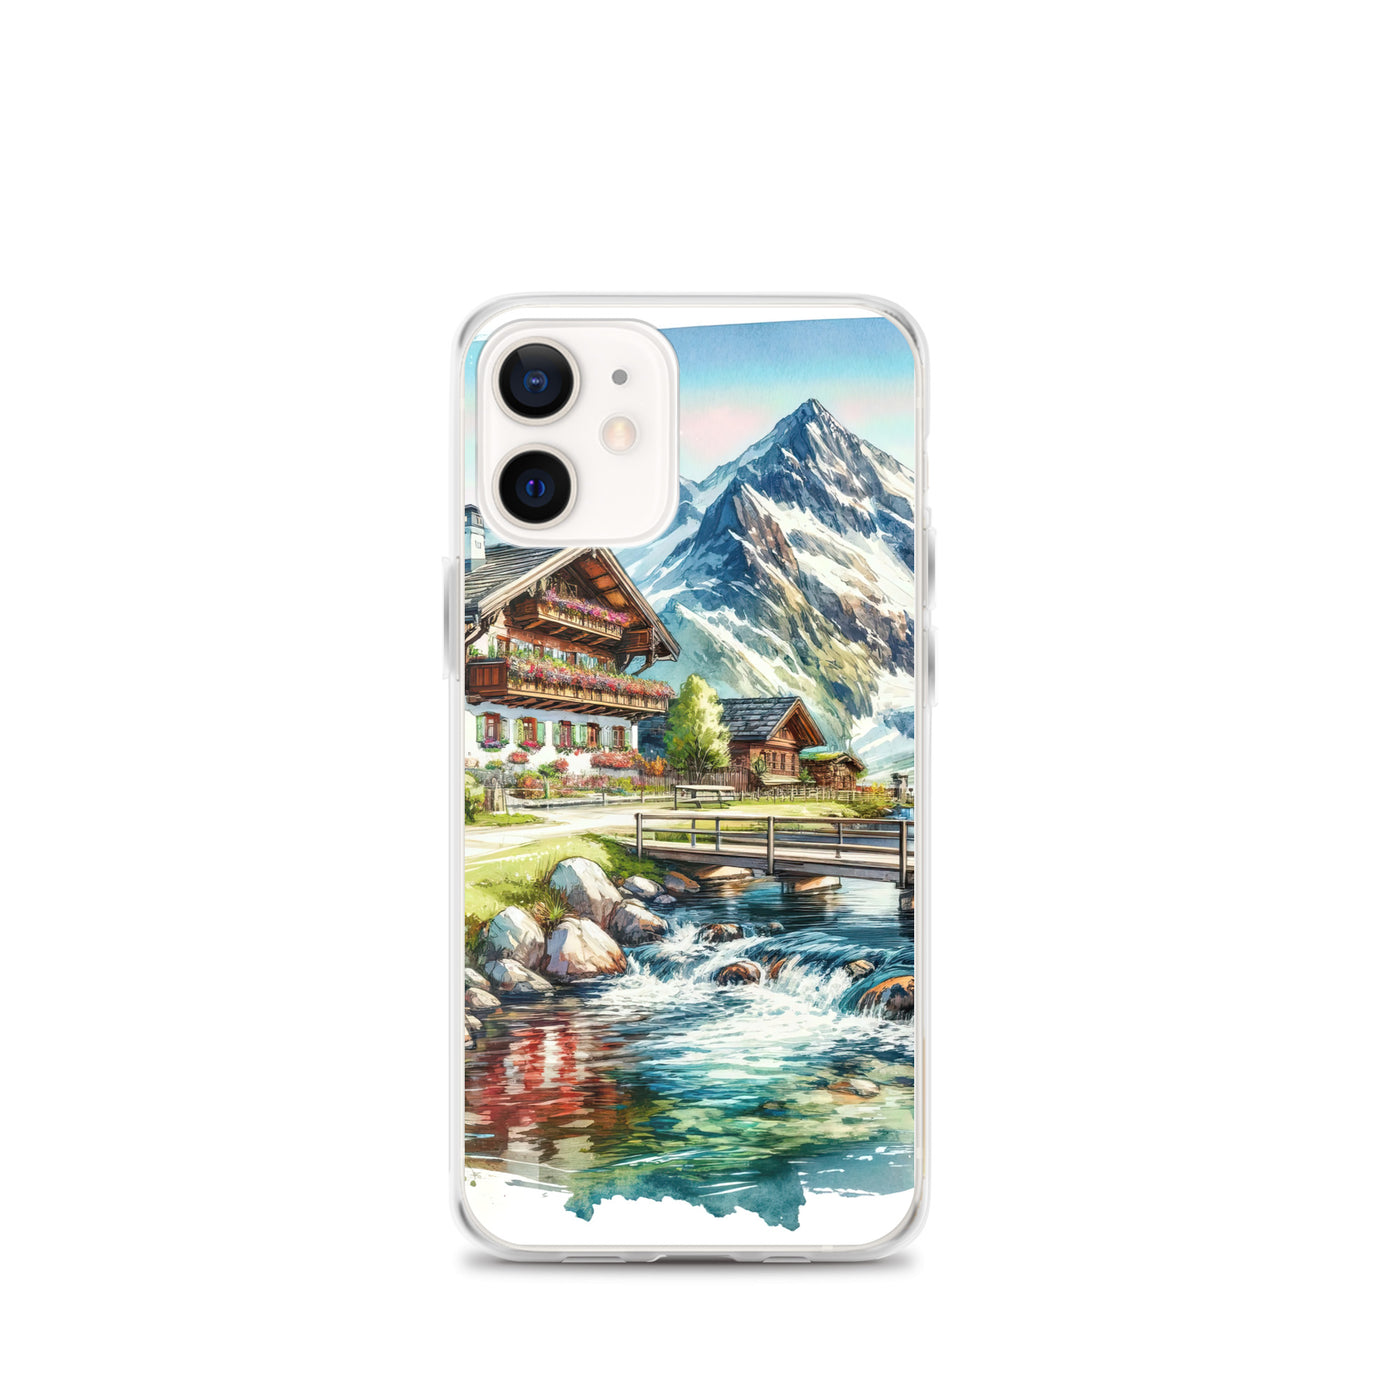 Aquarell der frühlingshaften Alpenkette mit österreichischer Flagge und schmelzendem Schnee - iPhone Schutzhülle (durchsichtig) berge xxx yyy zzz iPhone 12 mini